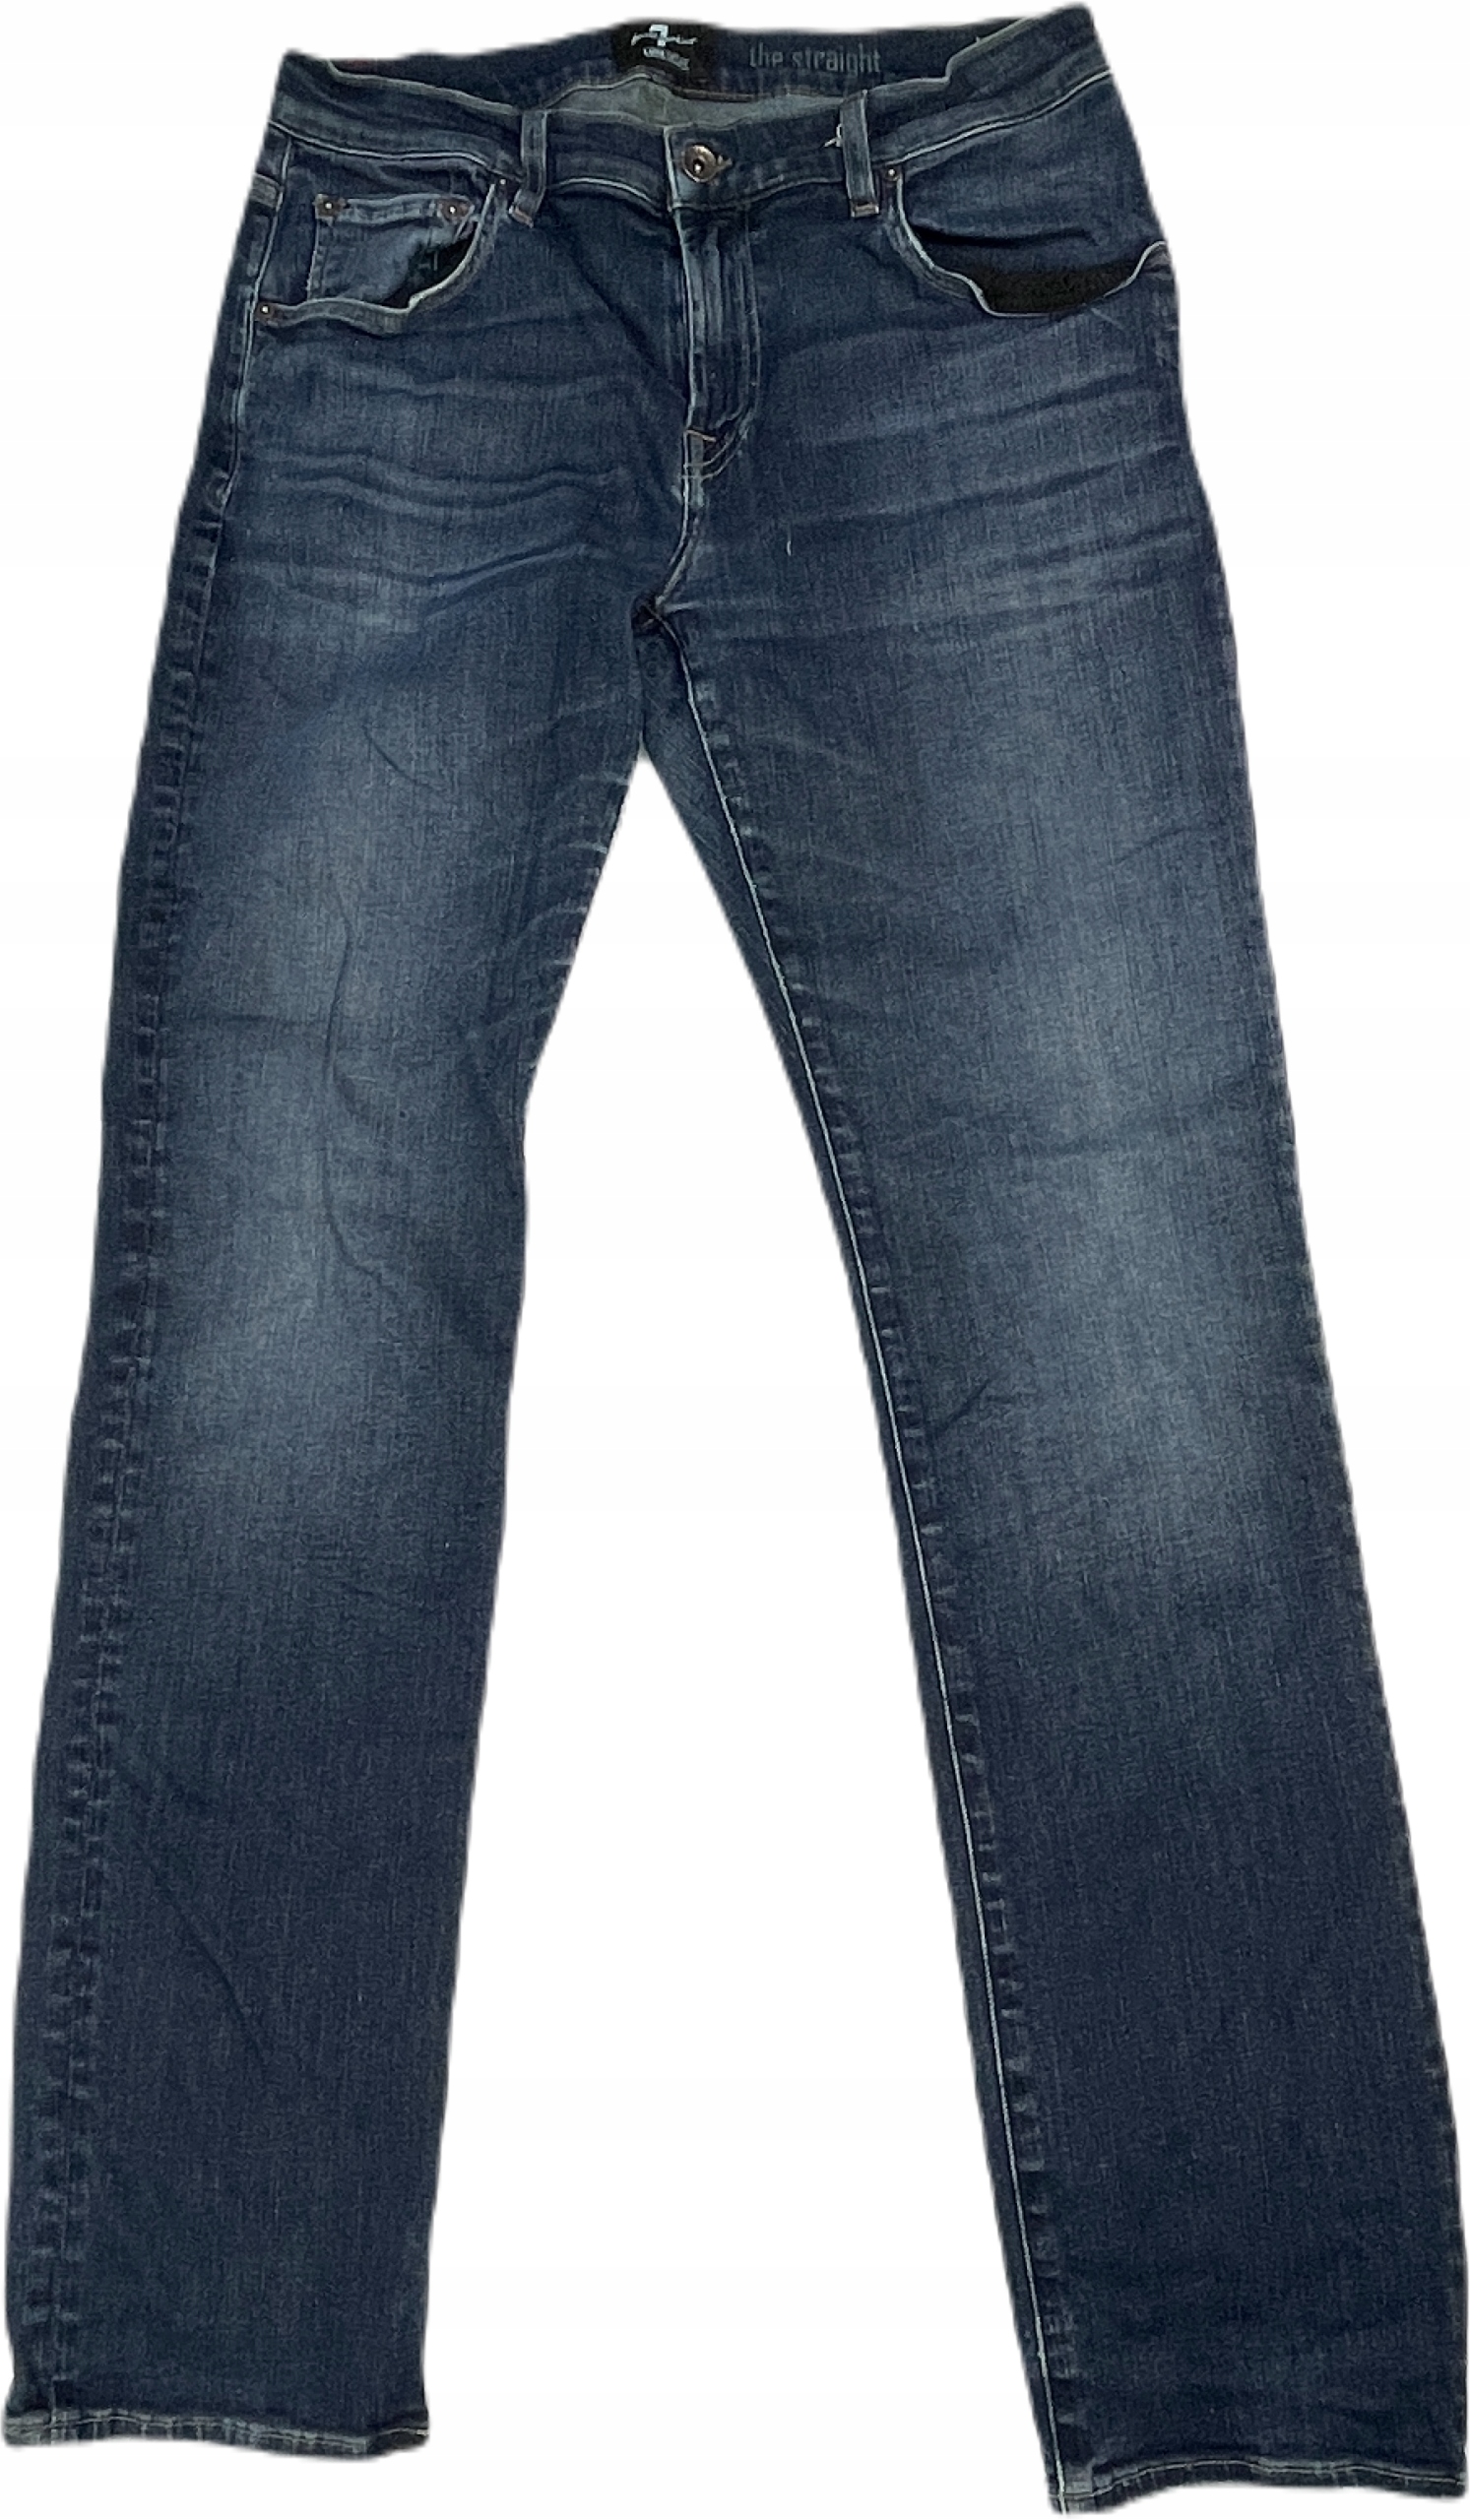 Spodnie męskie jeansowe 7 FOR ALL MANKIND 34